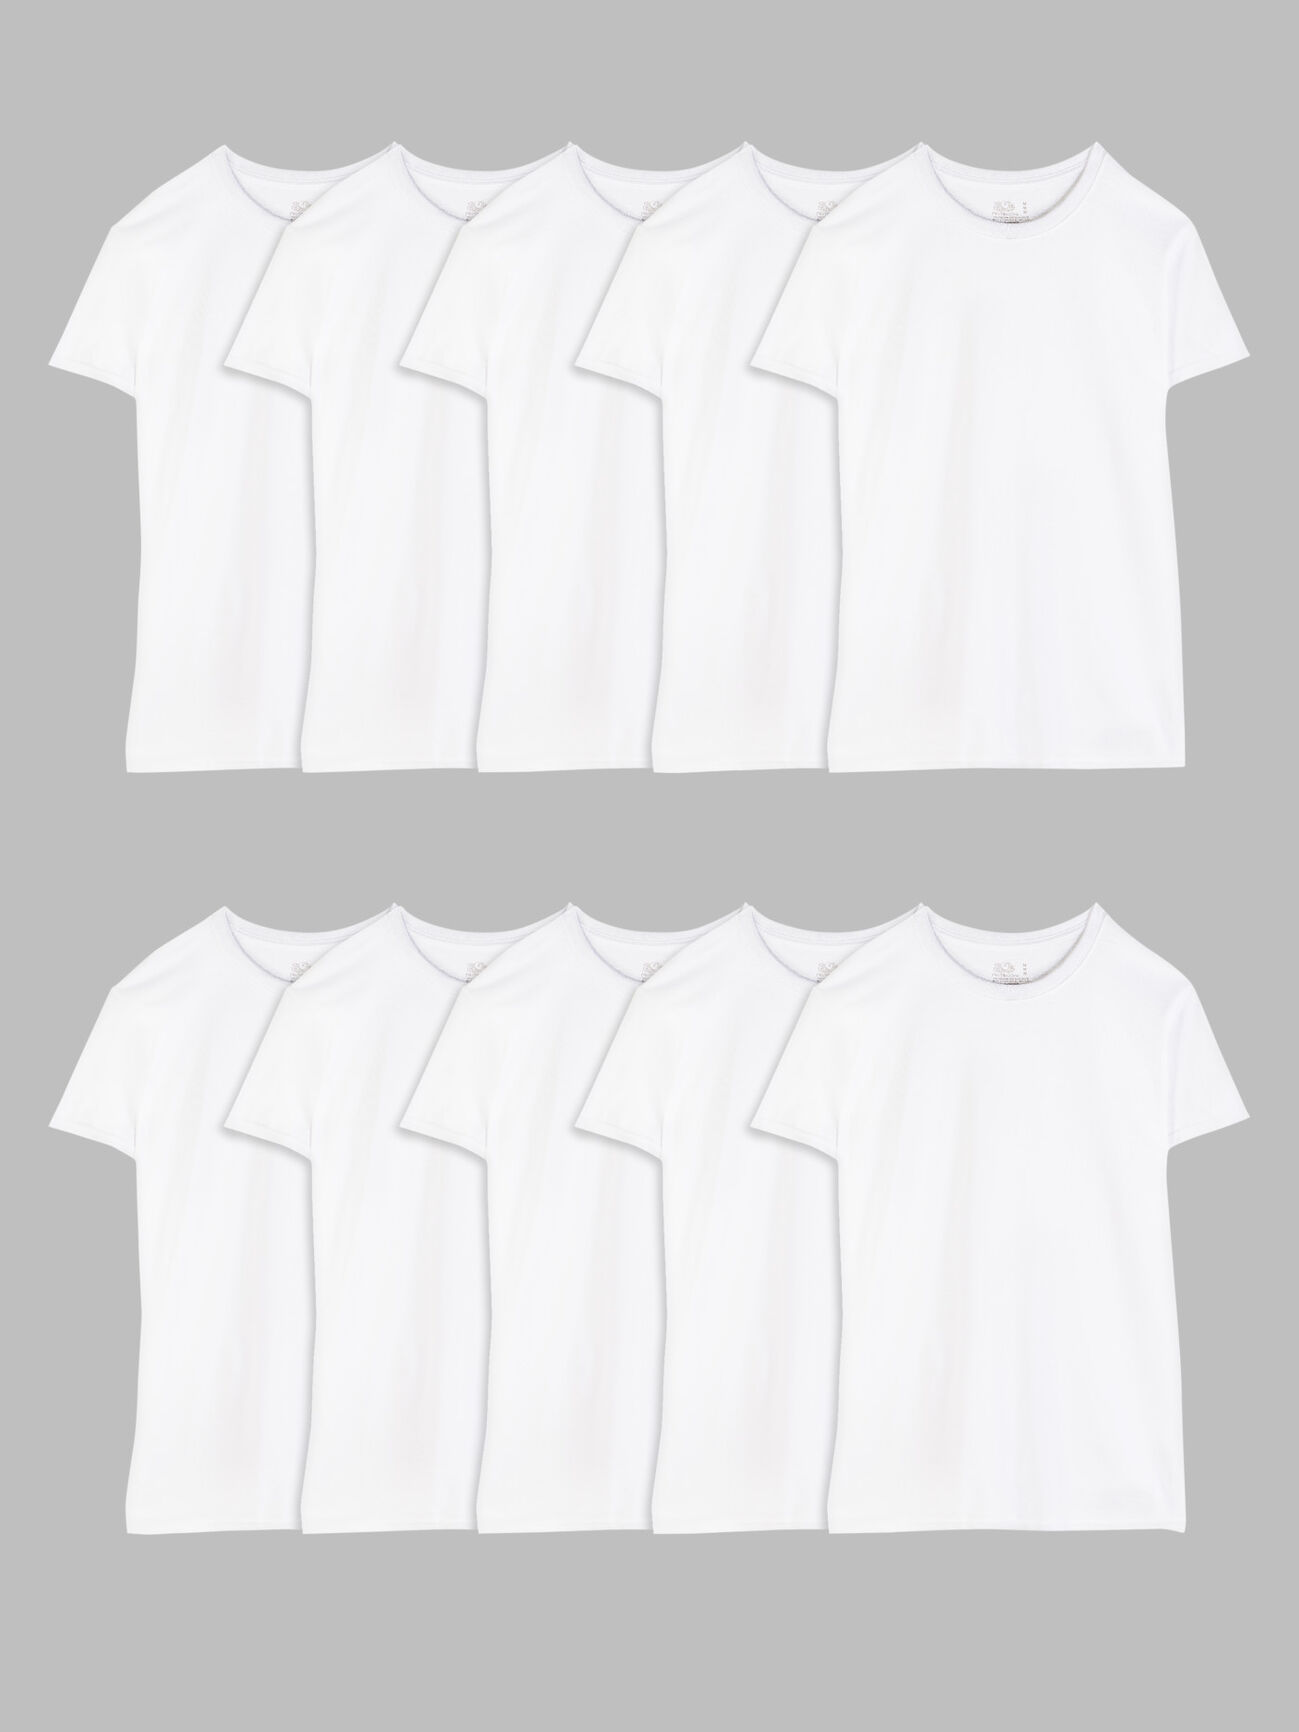 Men's Crew Undershirt, White 10 Pack White